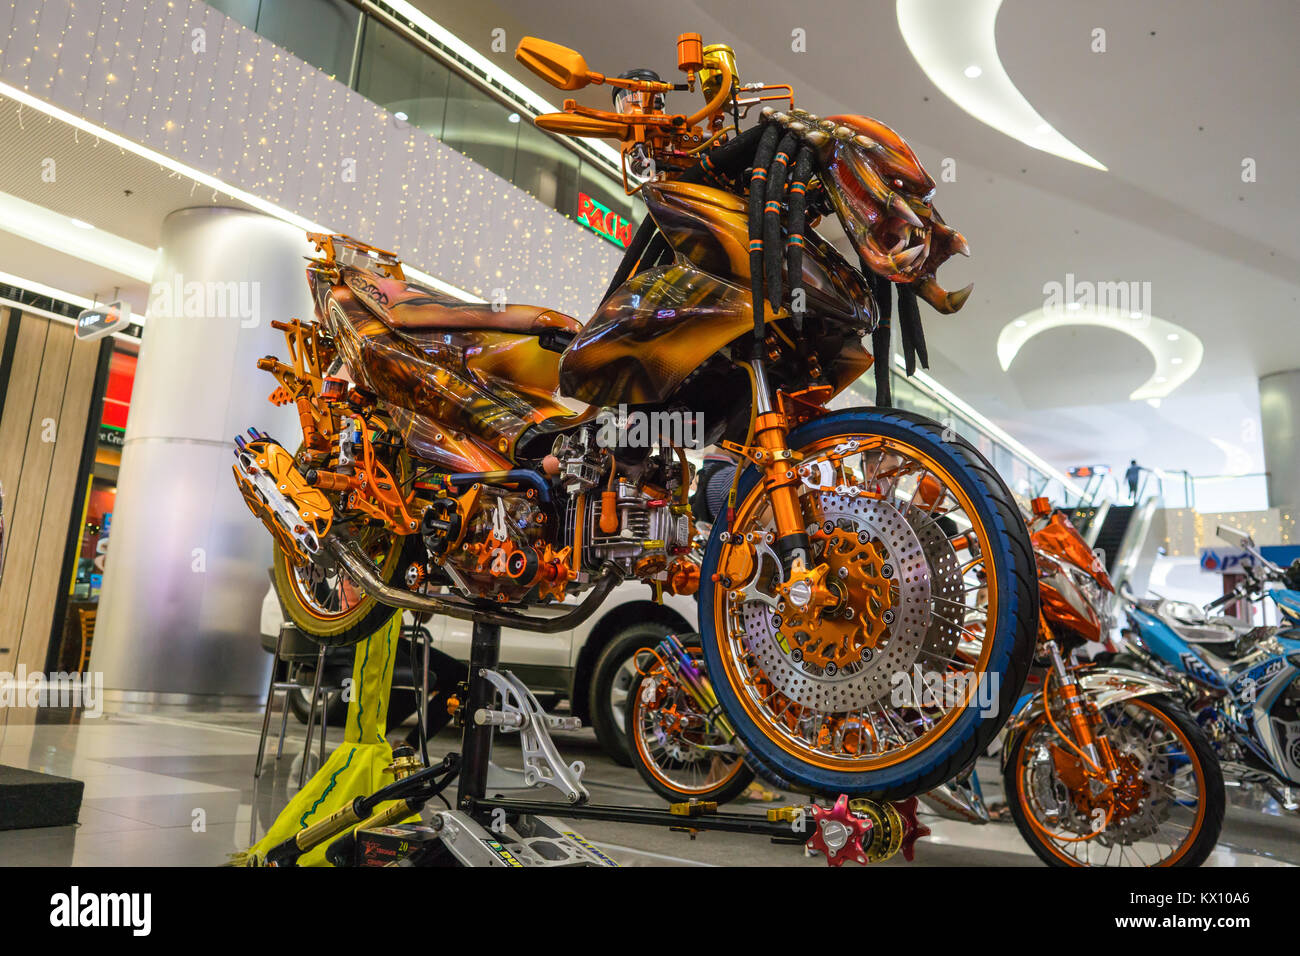 Une moto,150 Raider populaires aux Philippines,'blinged jusqu' avec le prédateur film thème. Banque D'Images